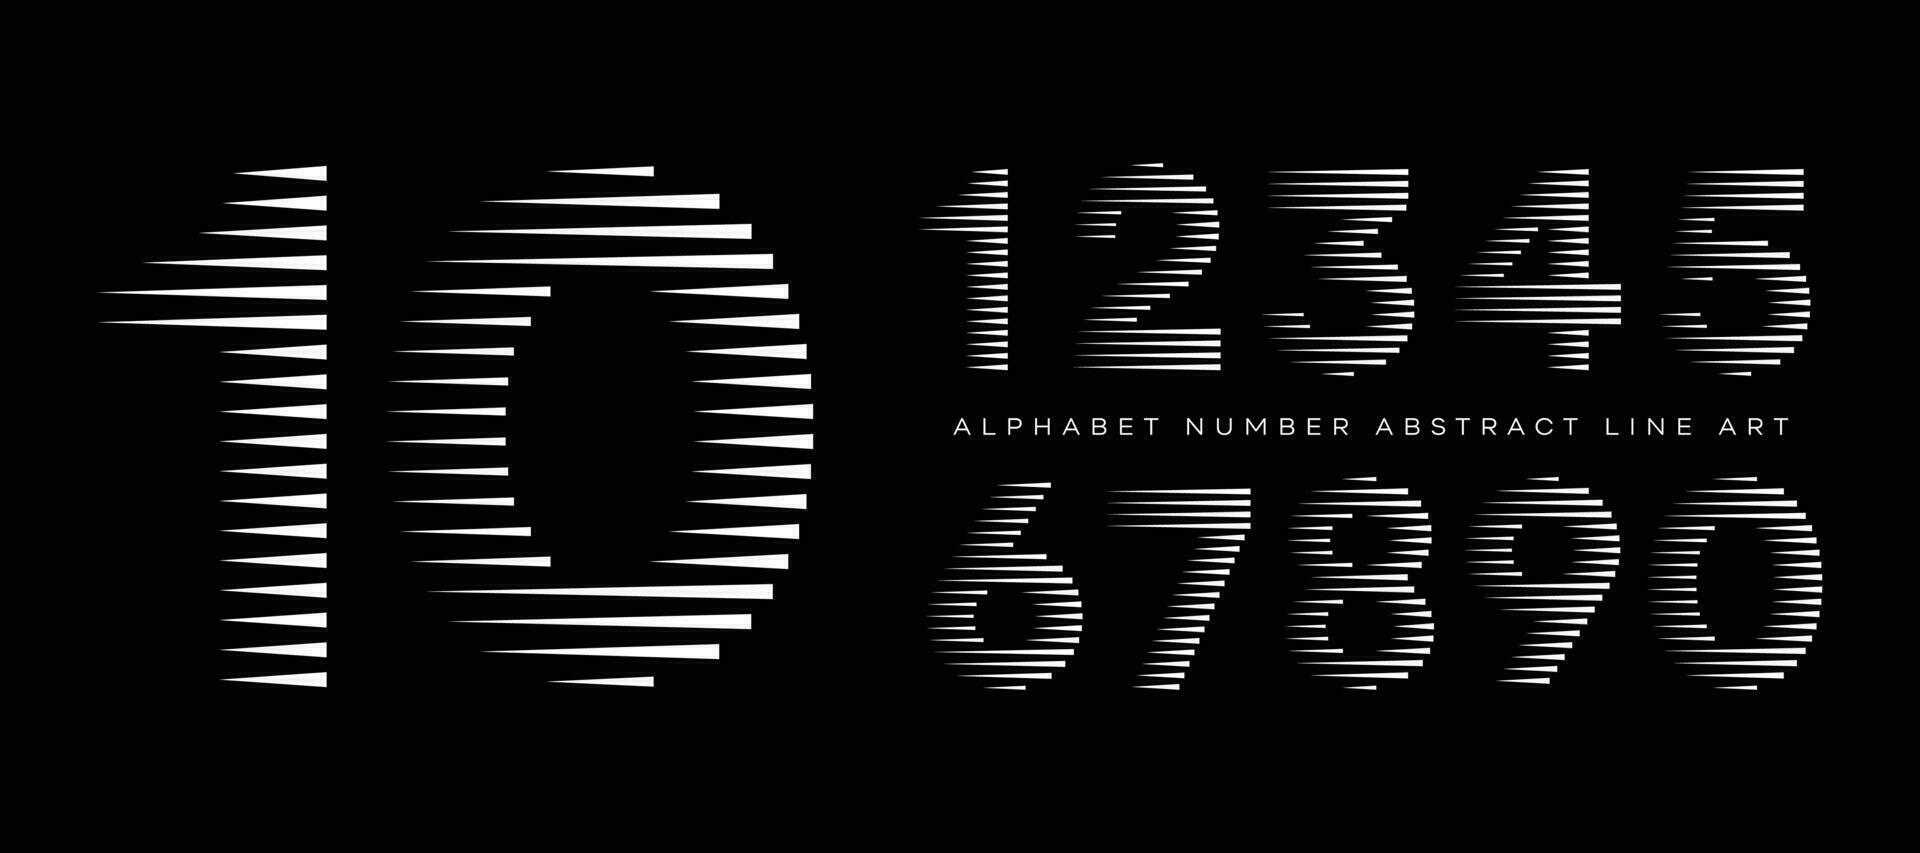 alfabet aantal abstract lijn kunst modern typografie lettertype vector illustratie